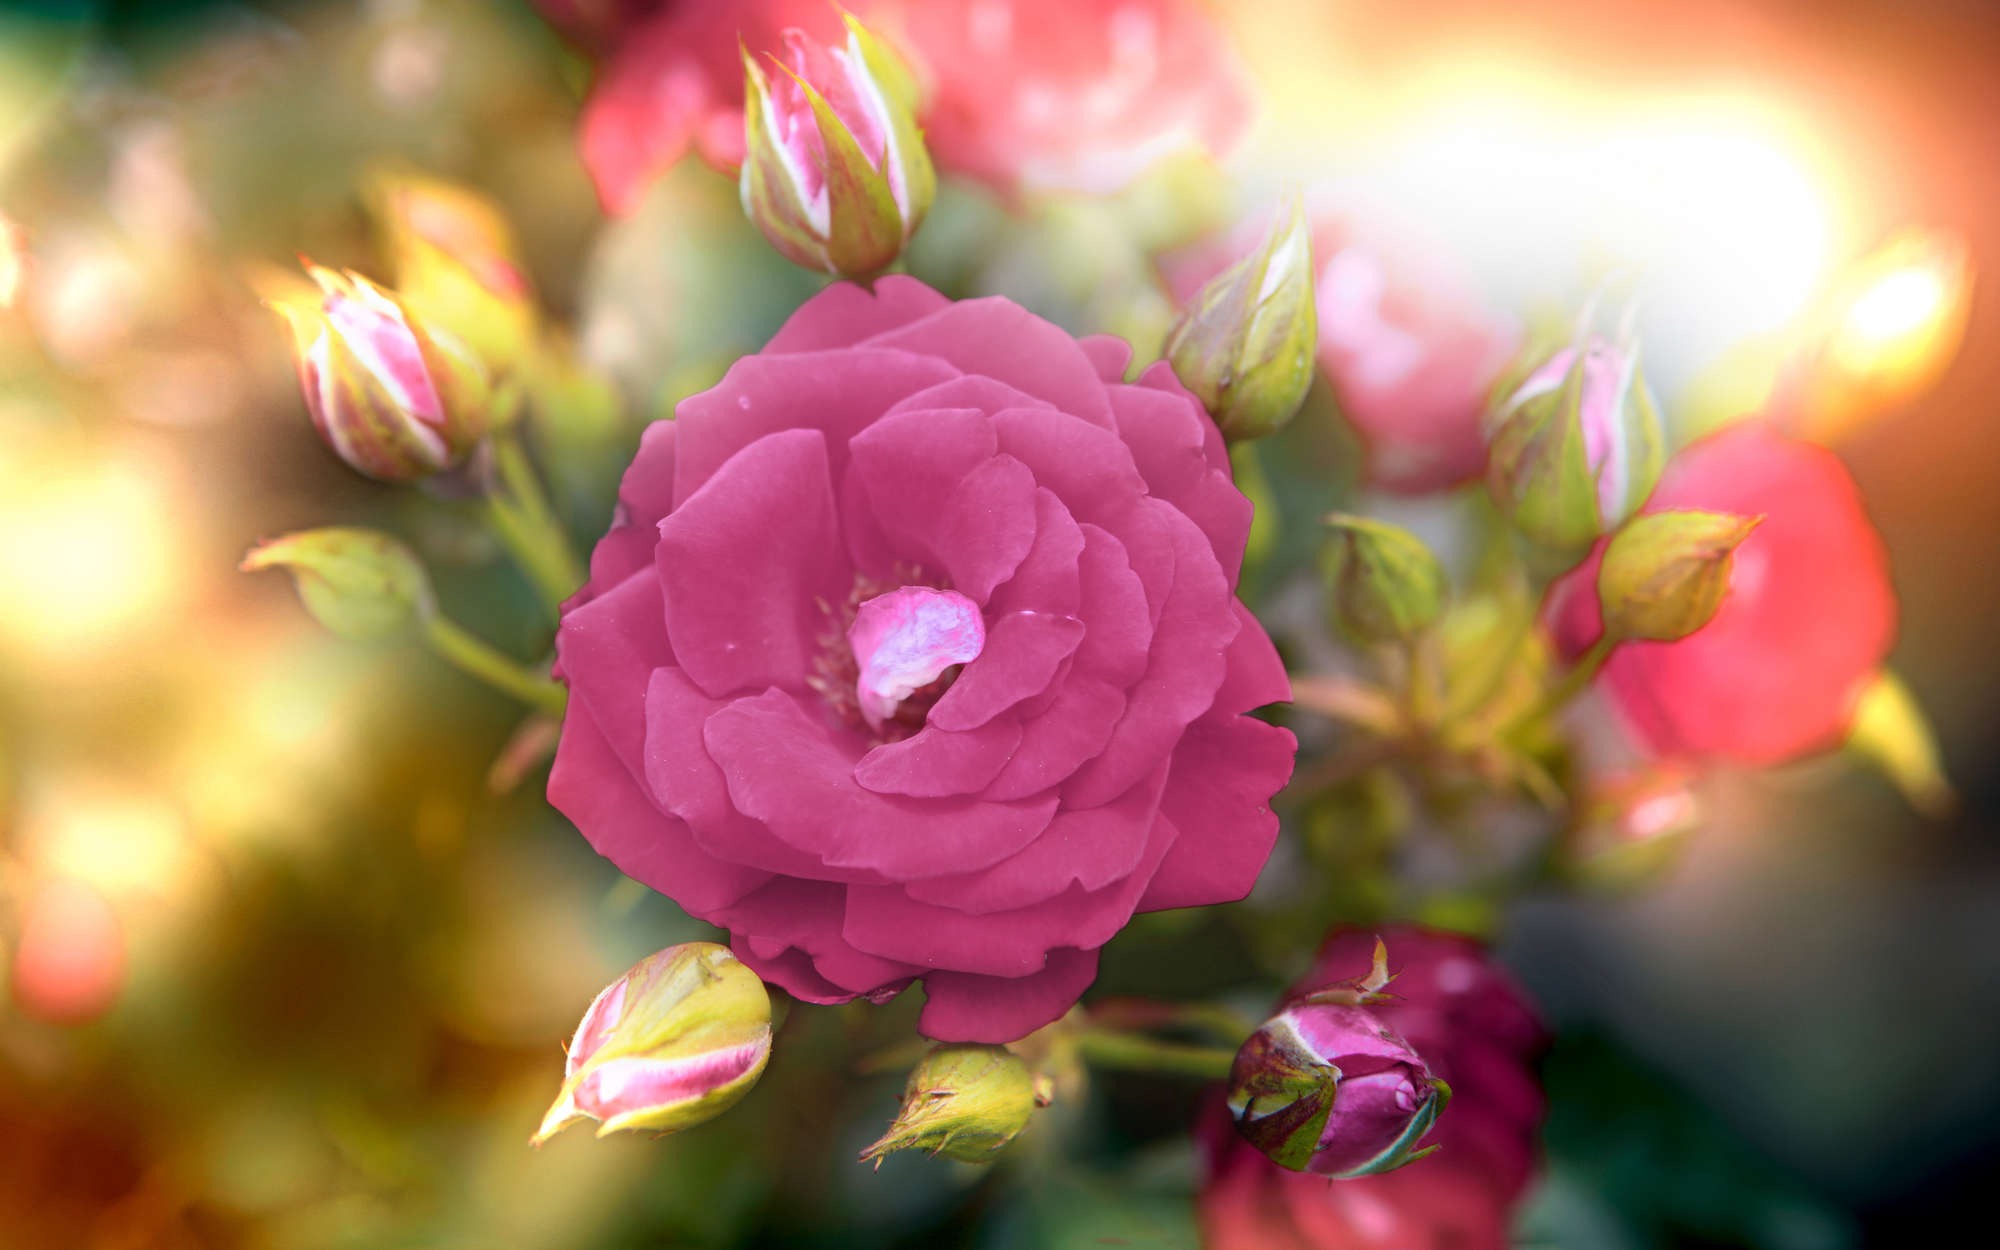             Fototapete Blume mit Blüte in pink – Strukturiertes Vlies
        